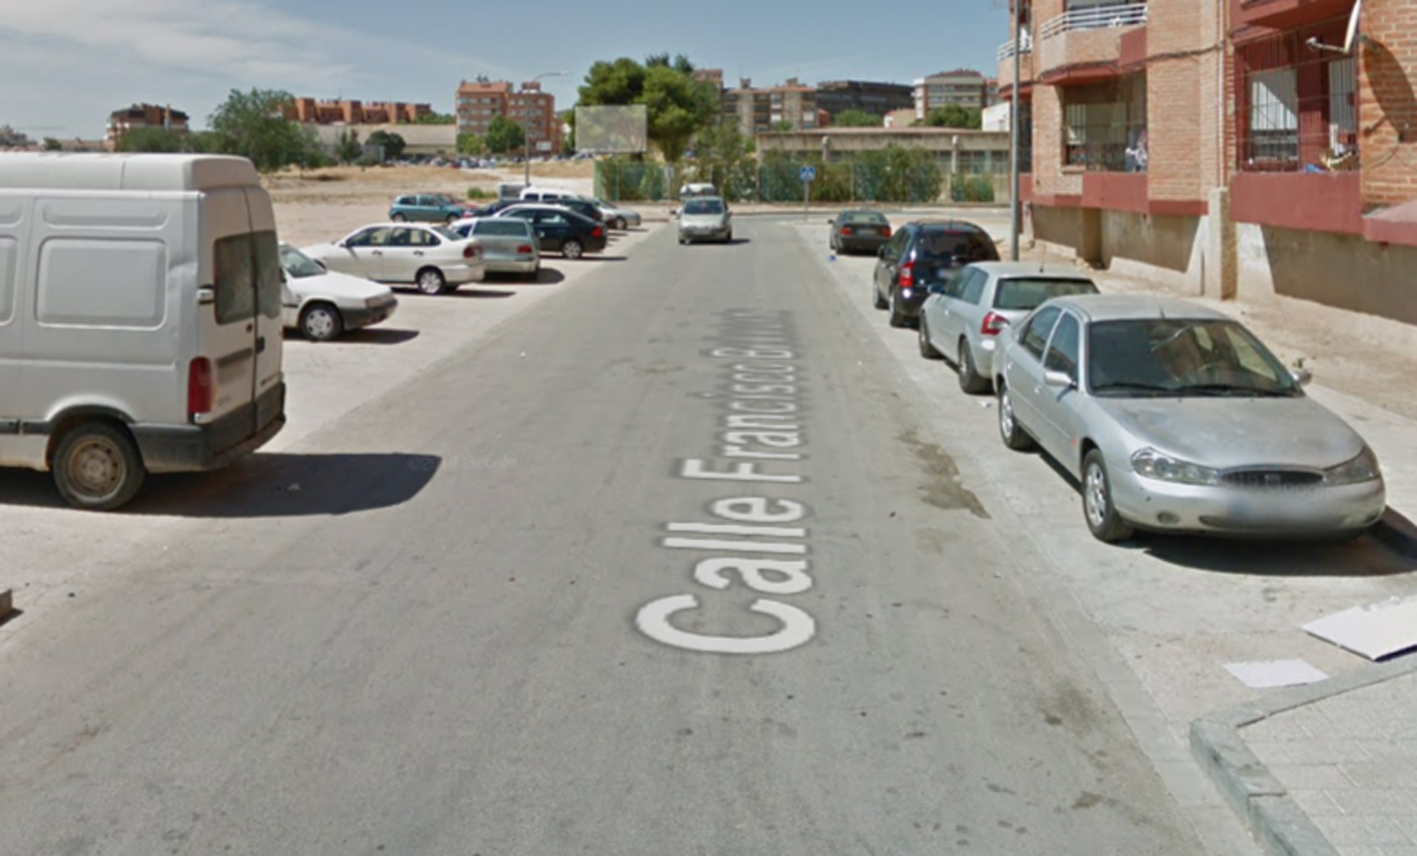 Calle Francisco Belmonte, en Albacete, donde ha ocurrido la agresión.